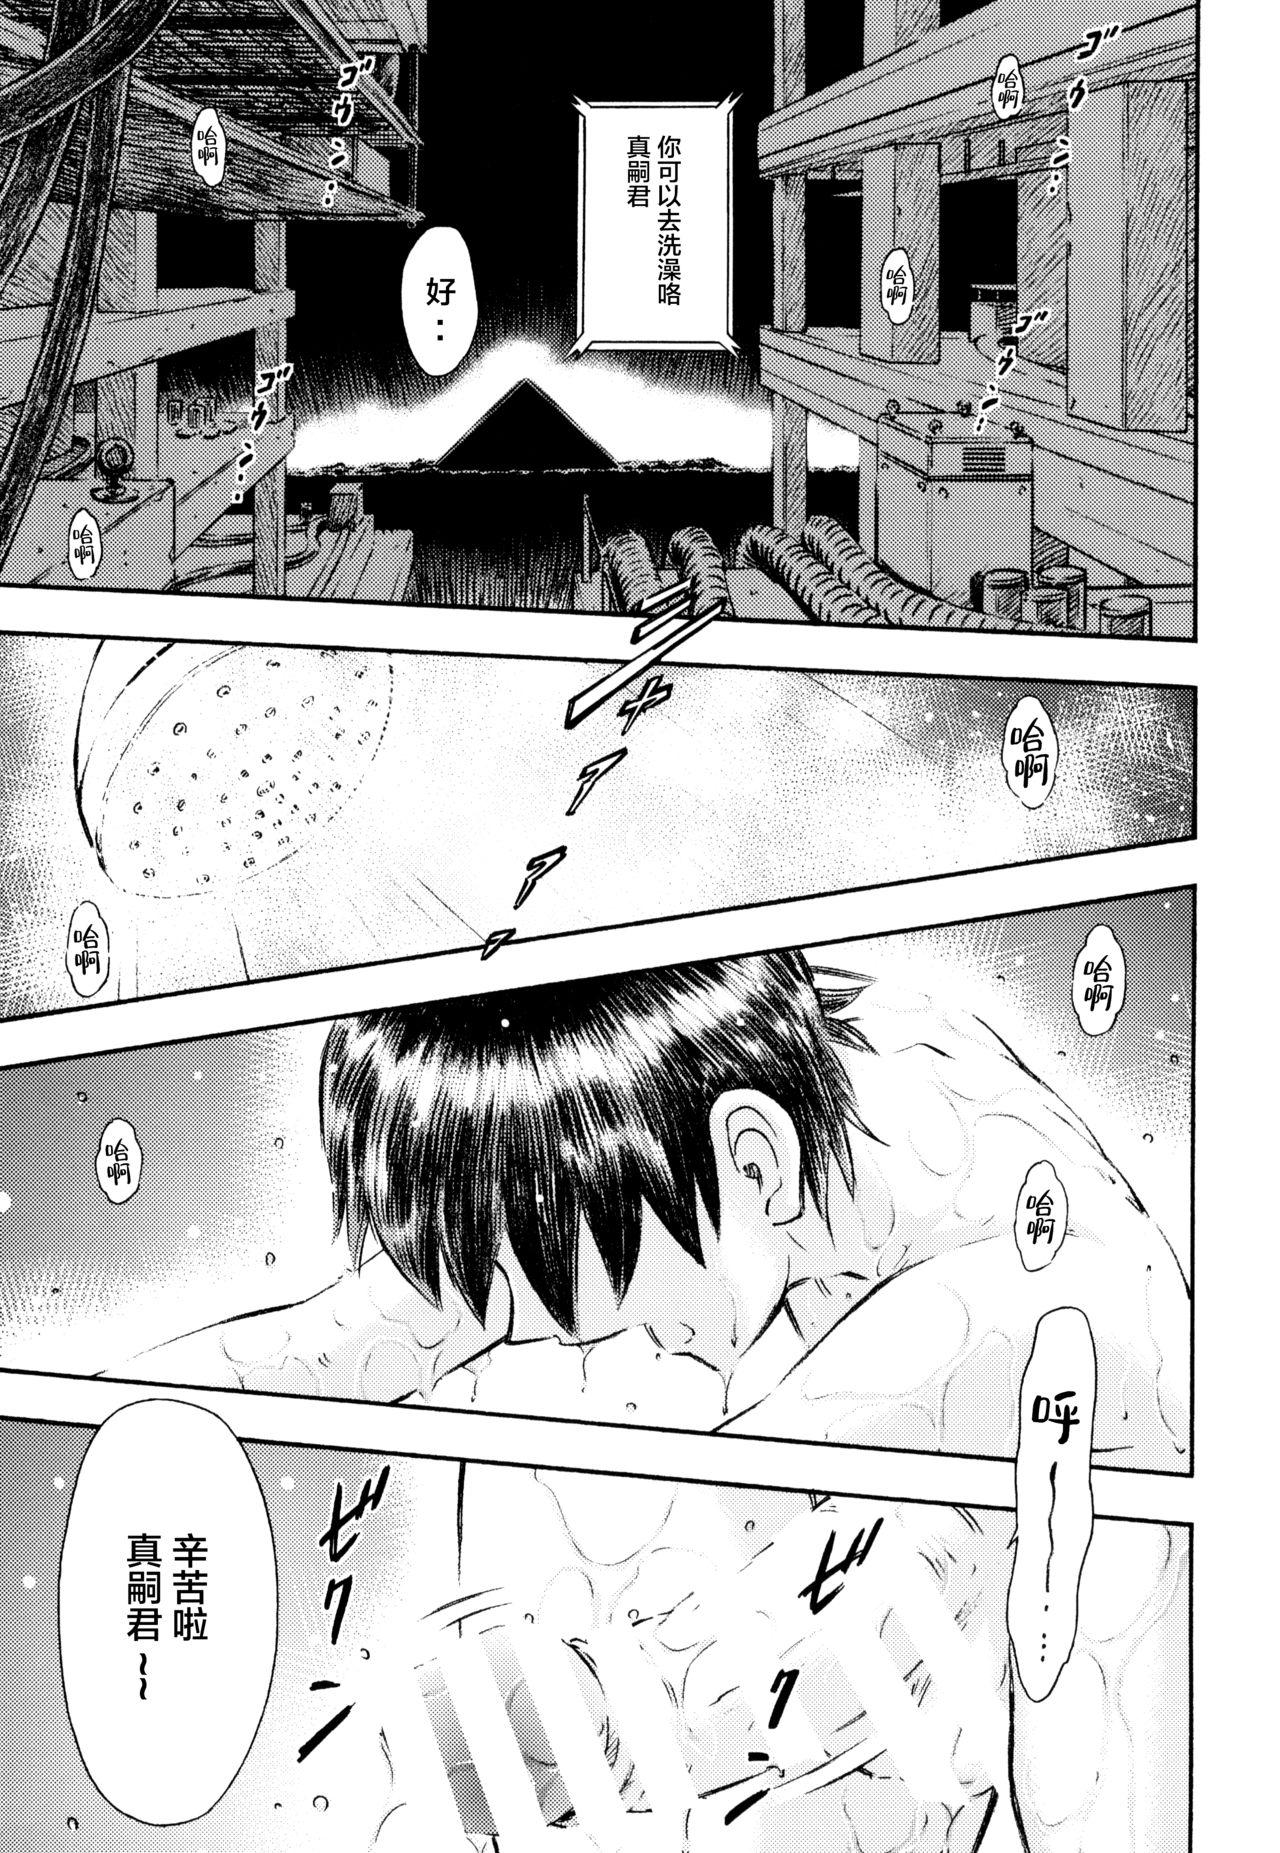 Stroking Asuka to Rei "Kyoudou Seikatsu" no Yokushuu - Neon genesis evangelion Pickup - Page 2